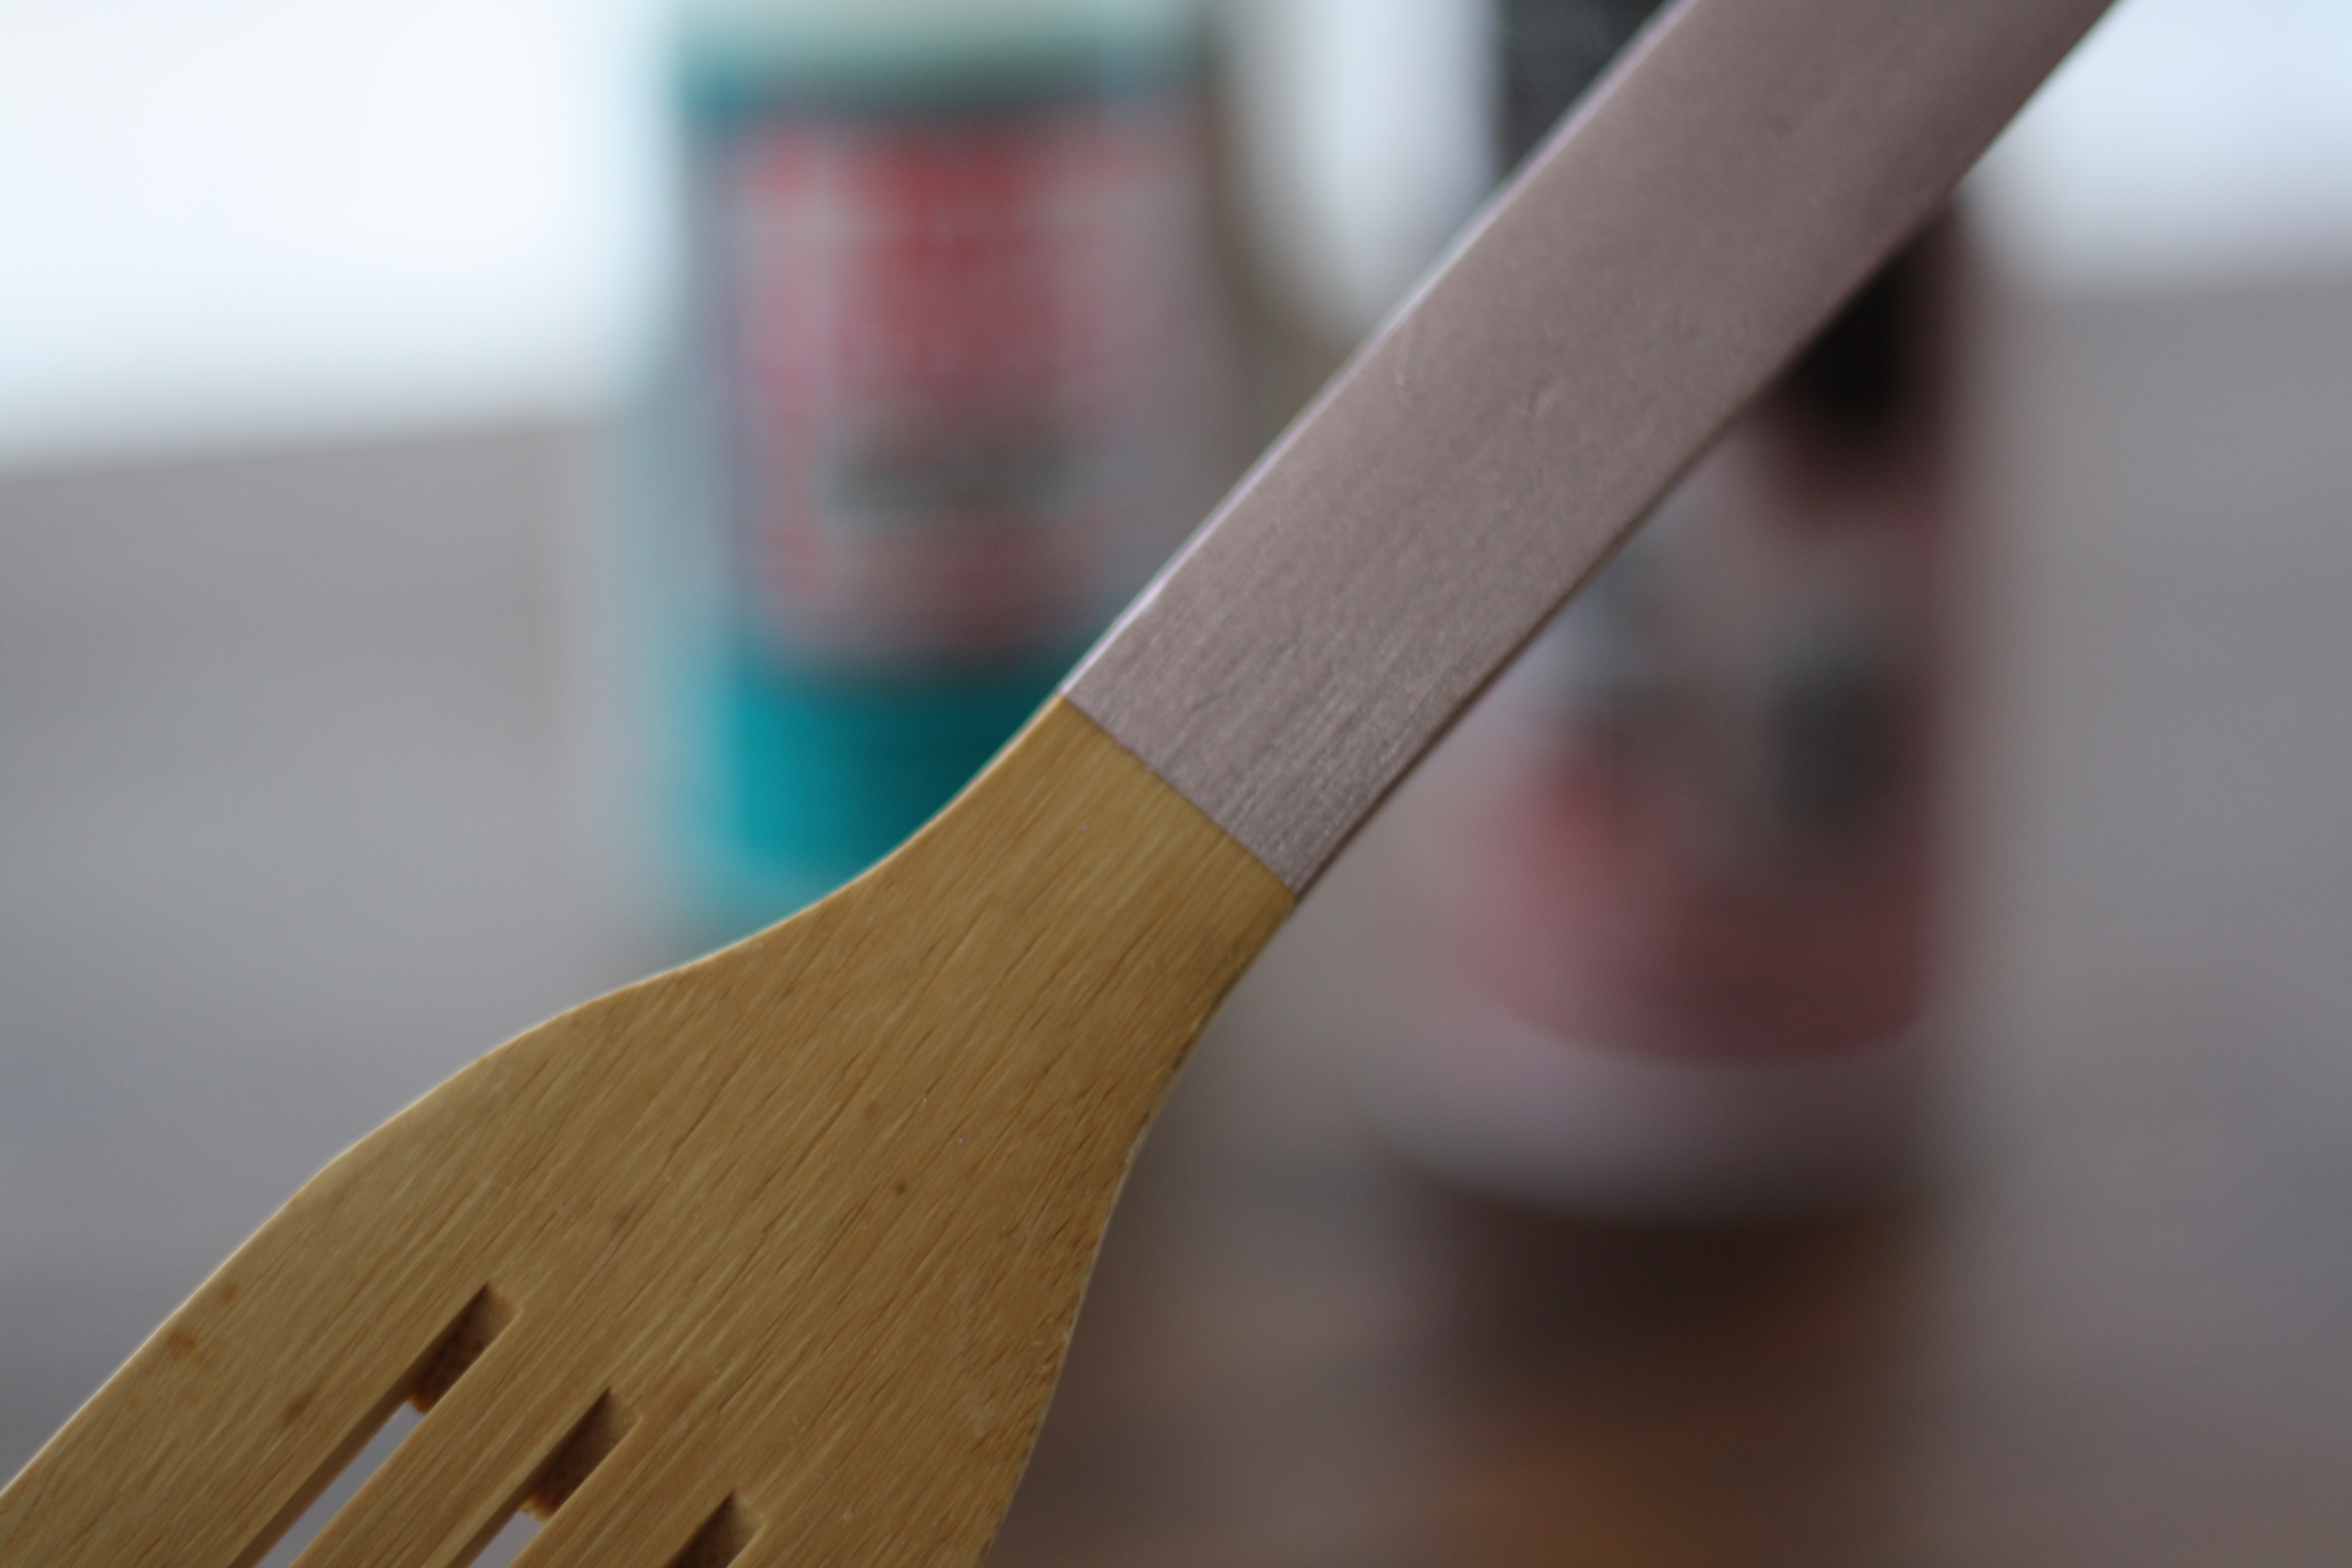 spray painted kitchen utensils